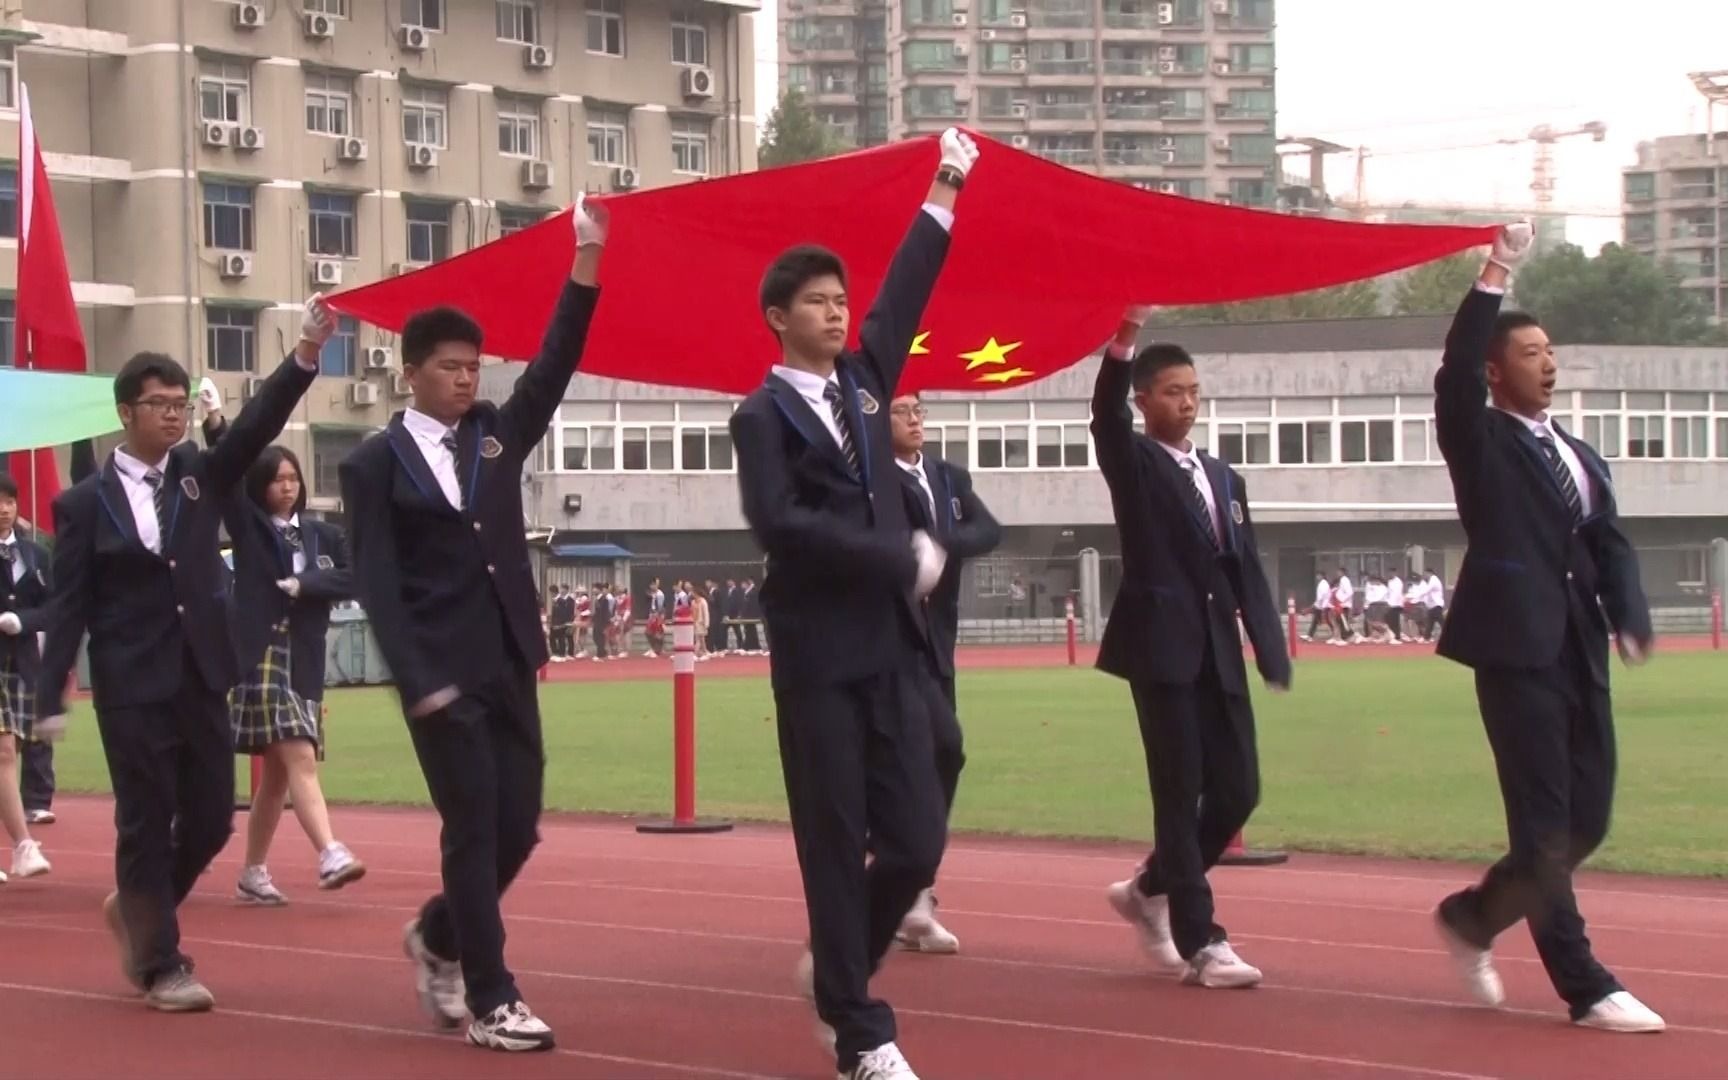 杭州育新高级中学第22届田径运动会开幕式国旗队入场